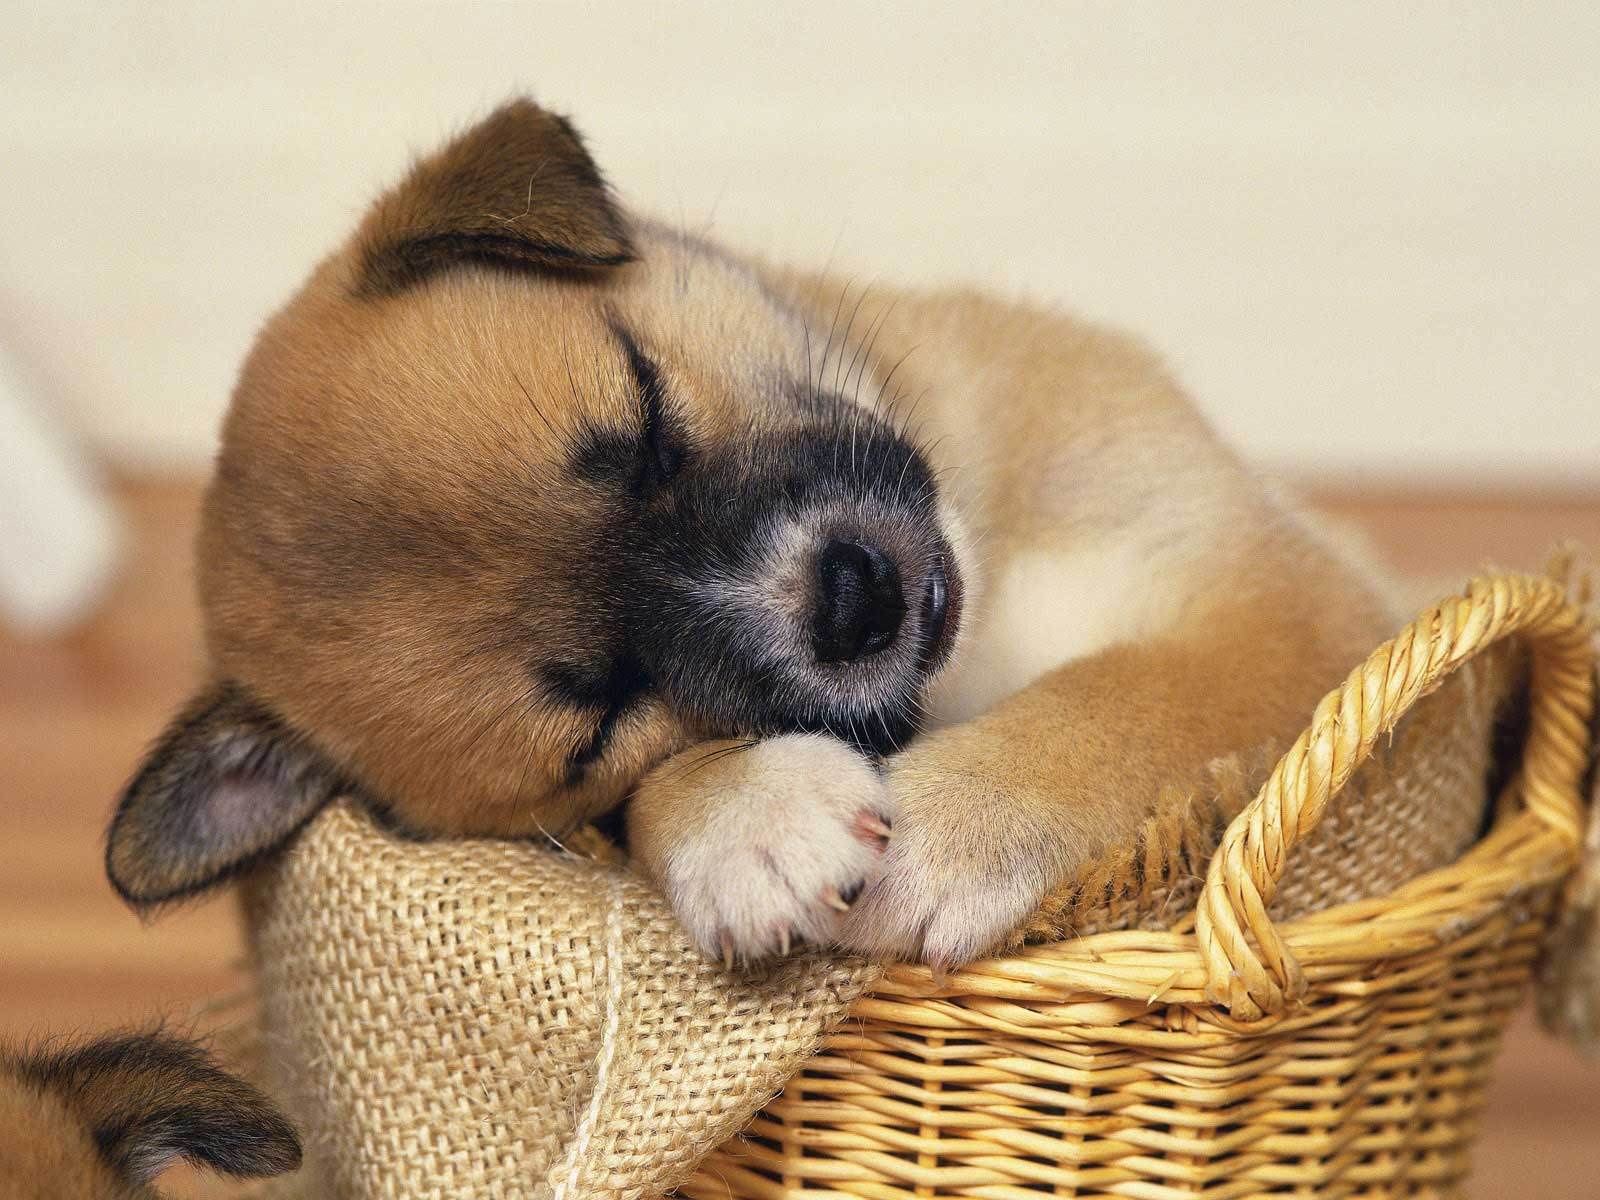 Puppy cute puppy sleeping in basket wallpaper desktop free